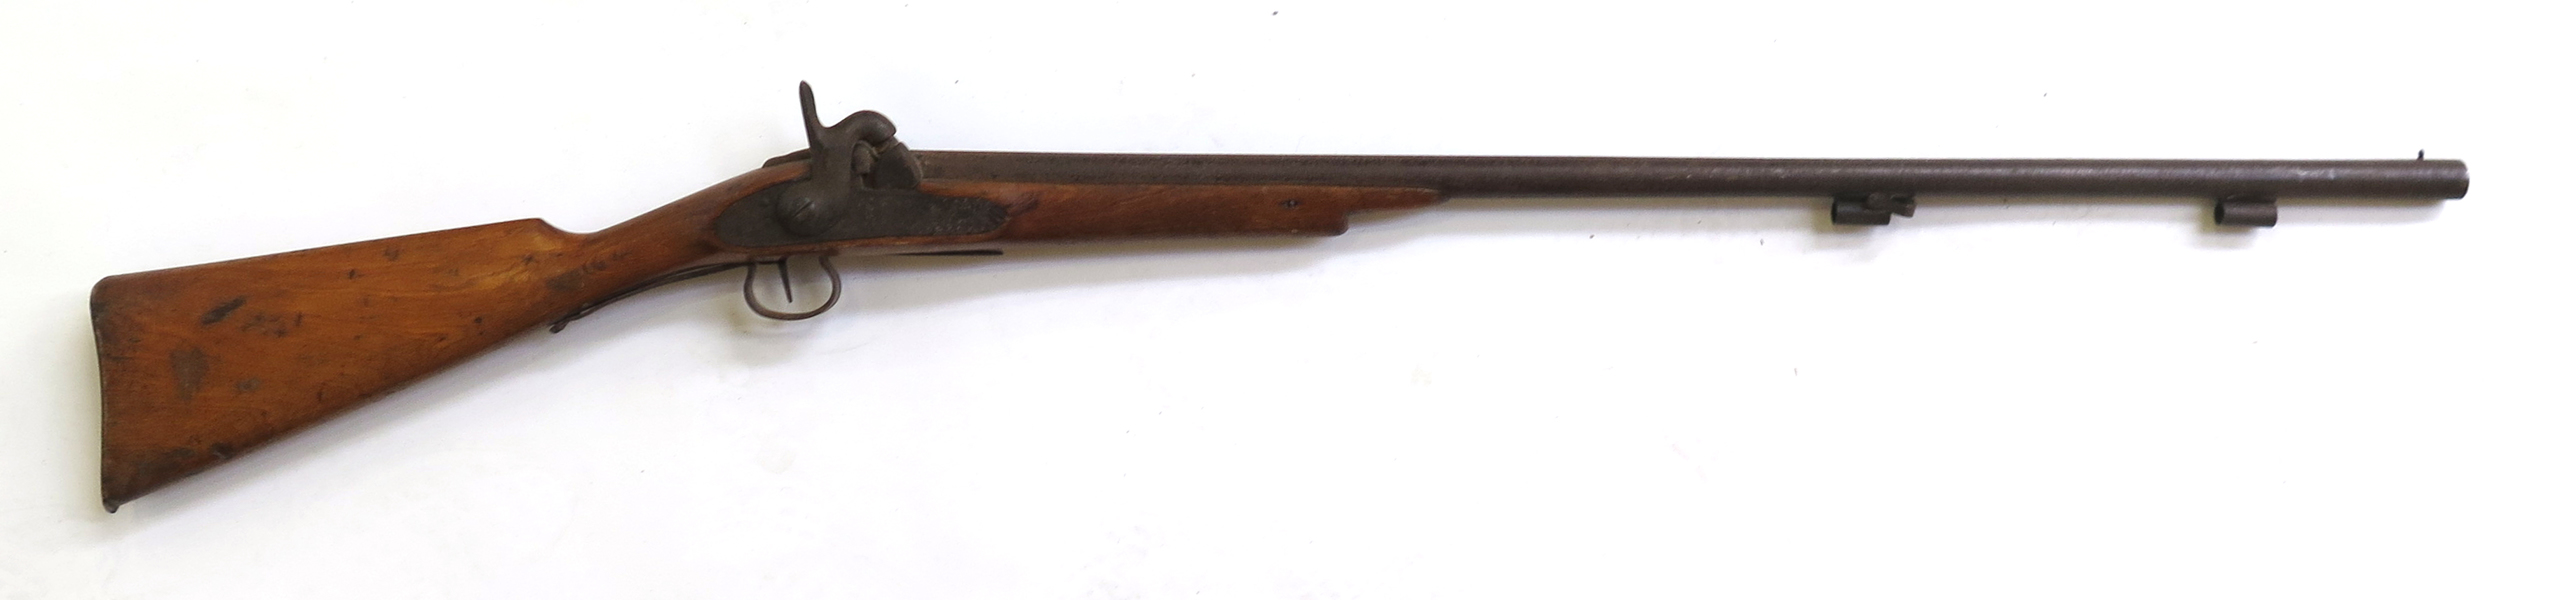 Slaglåsgevär M/1860 för infanteriet, stämplat Carl Gustafs Stad 1864, _21822a_8da8687fe1f6d51_lg.jpeg